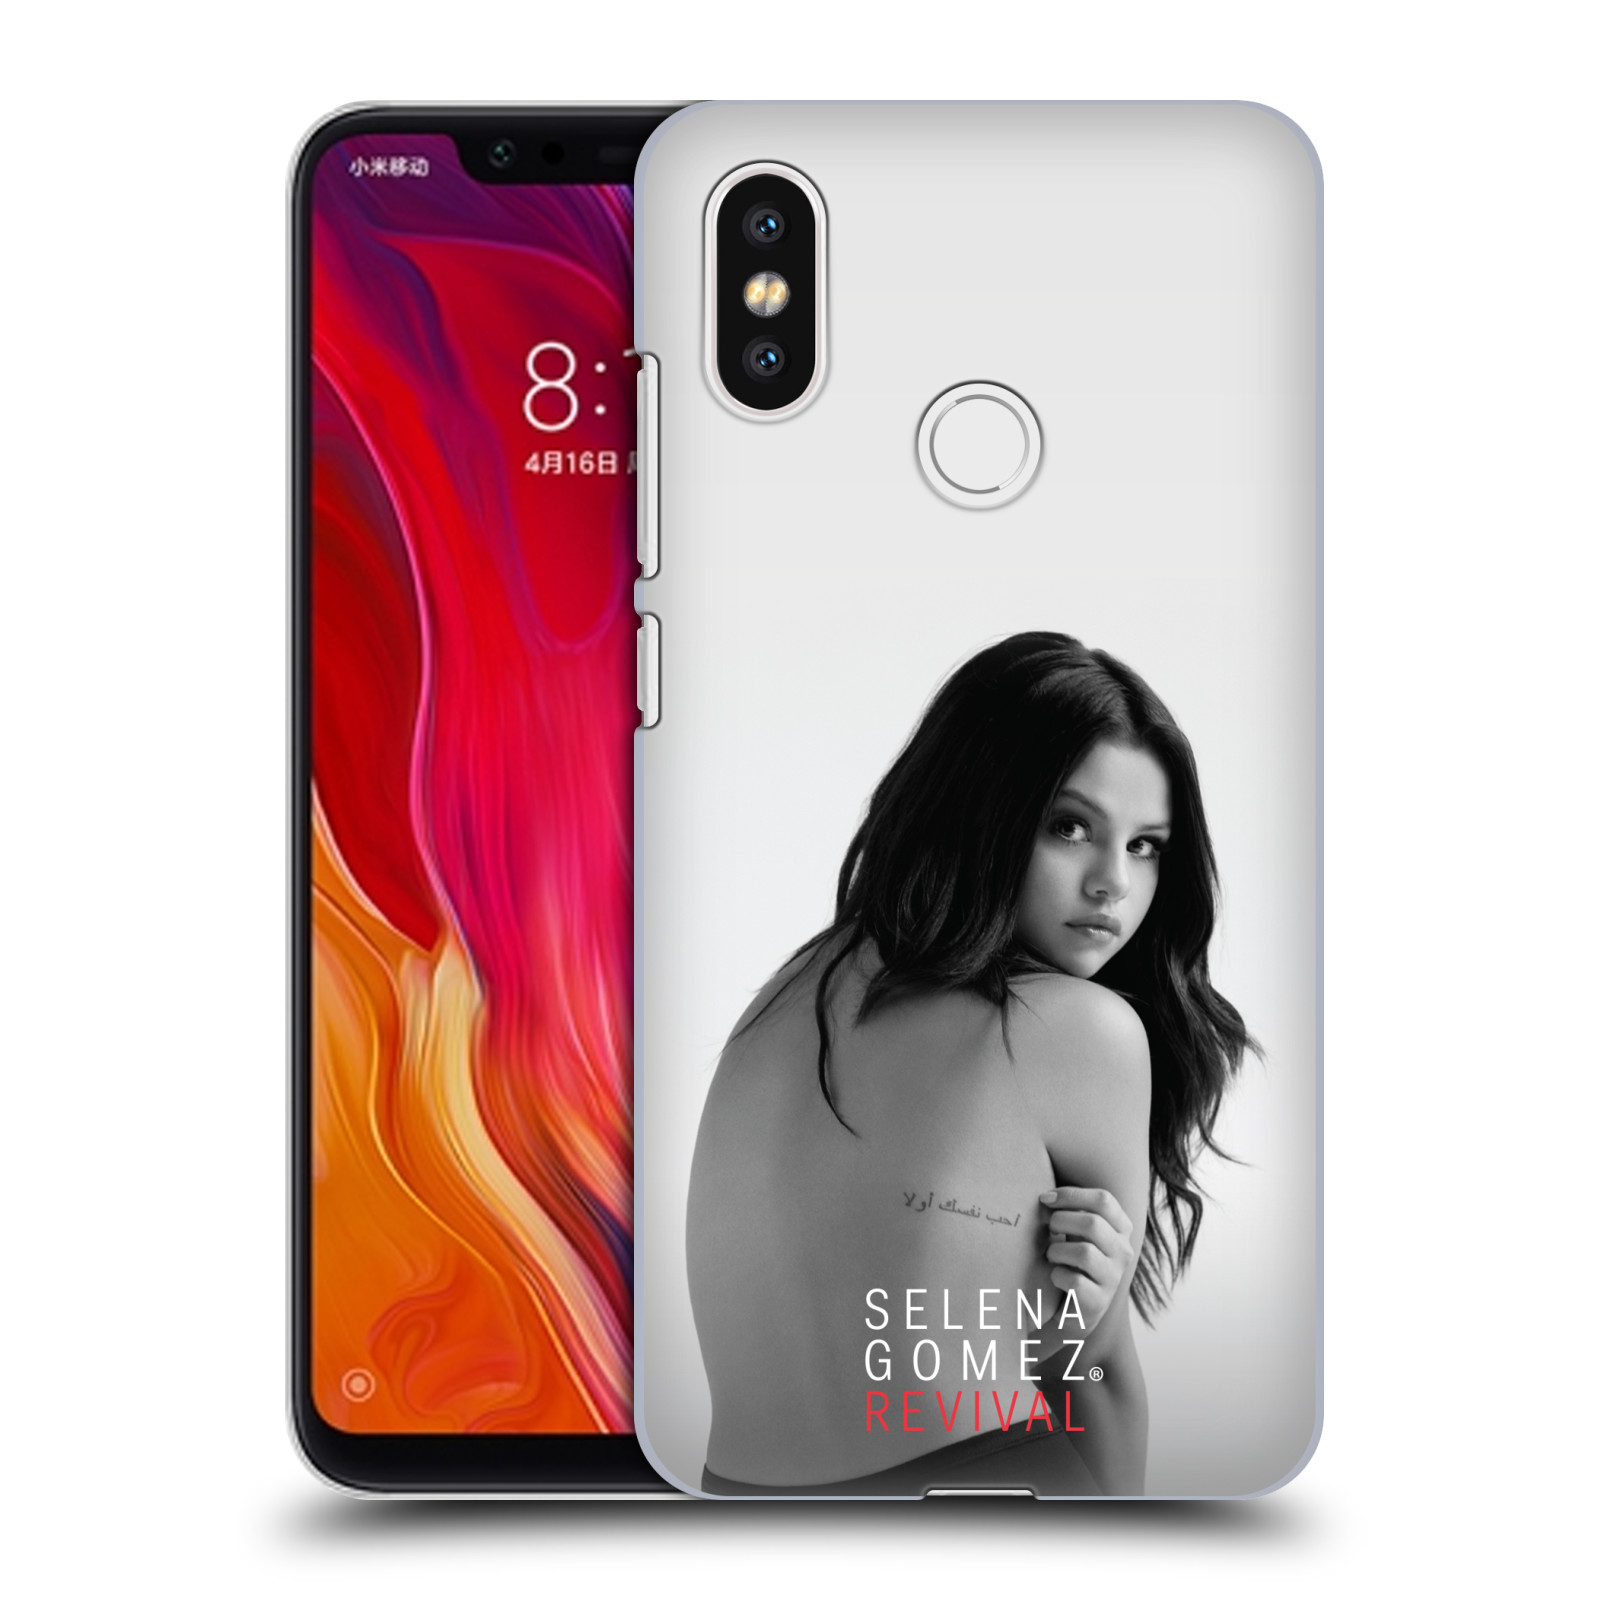 HEAD CASE plastový obal na mobil Xiaomi Mi 8 Zpěvačka Selena Gomez foto Revival zadní strana